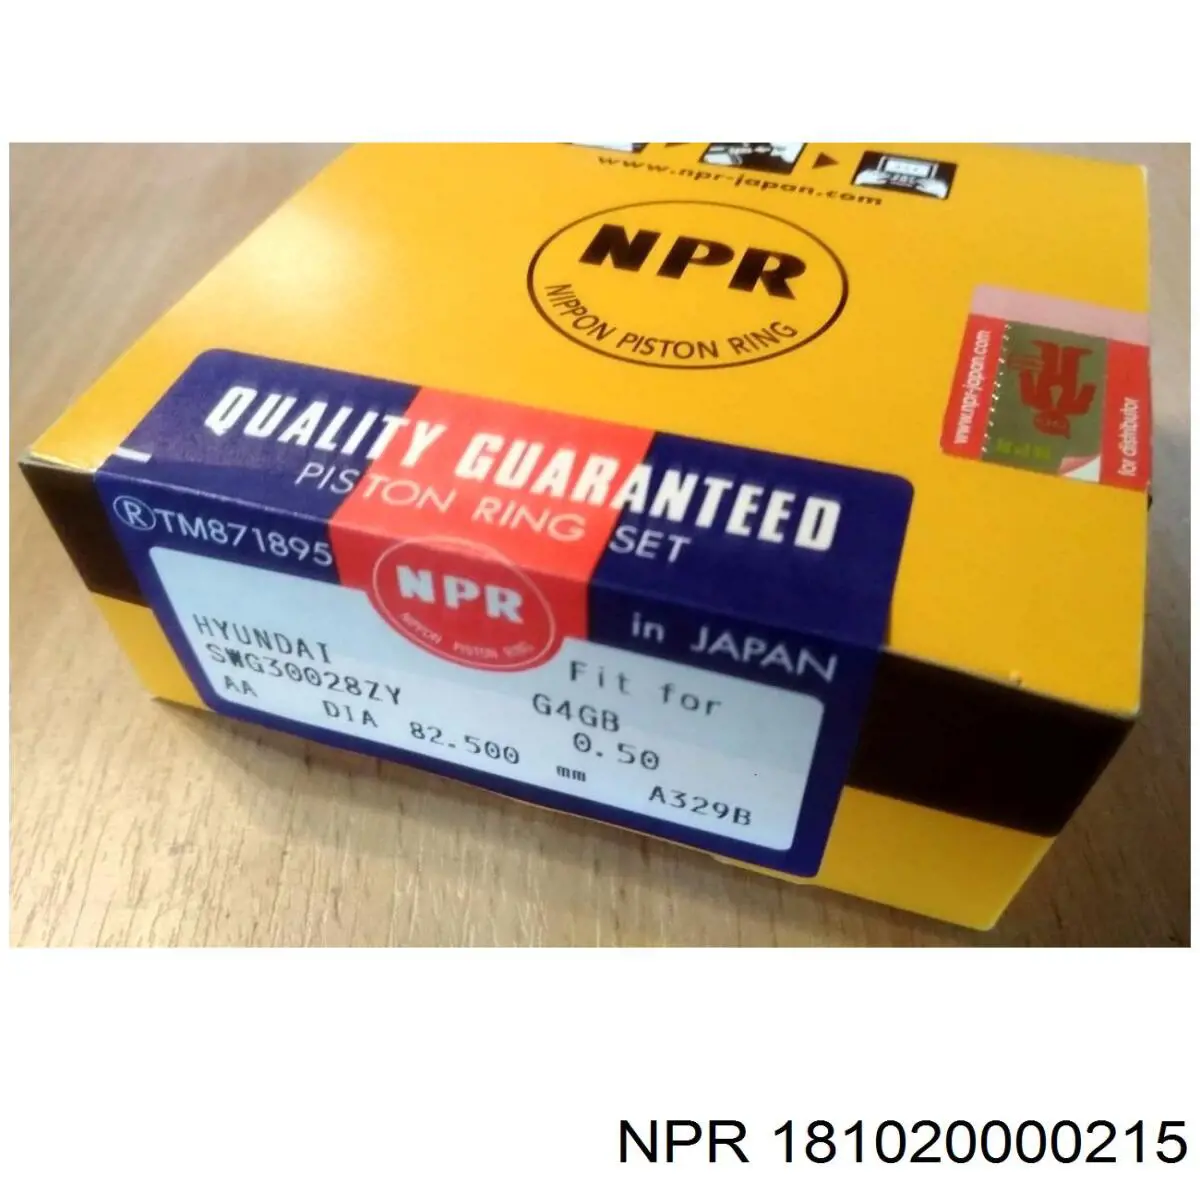 181020000215 NE/NPR juego de cojinetes de biela, cota de reparación +0,25 mm